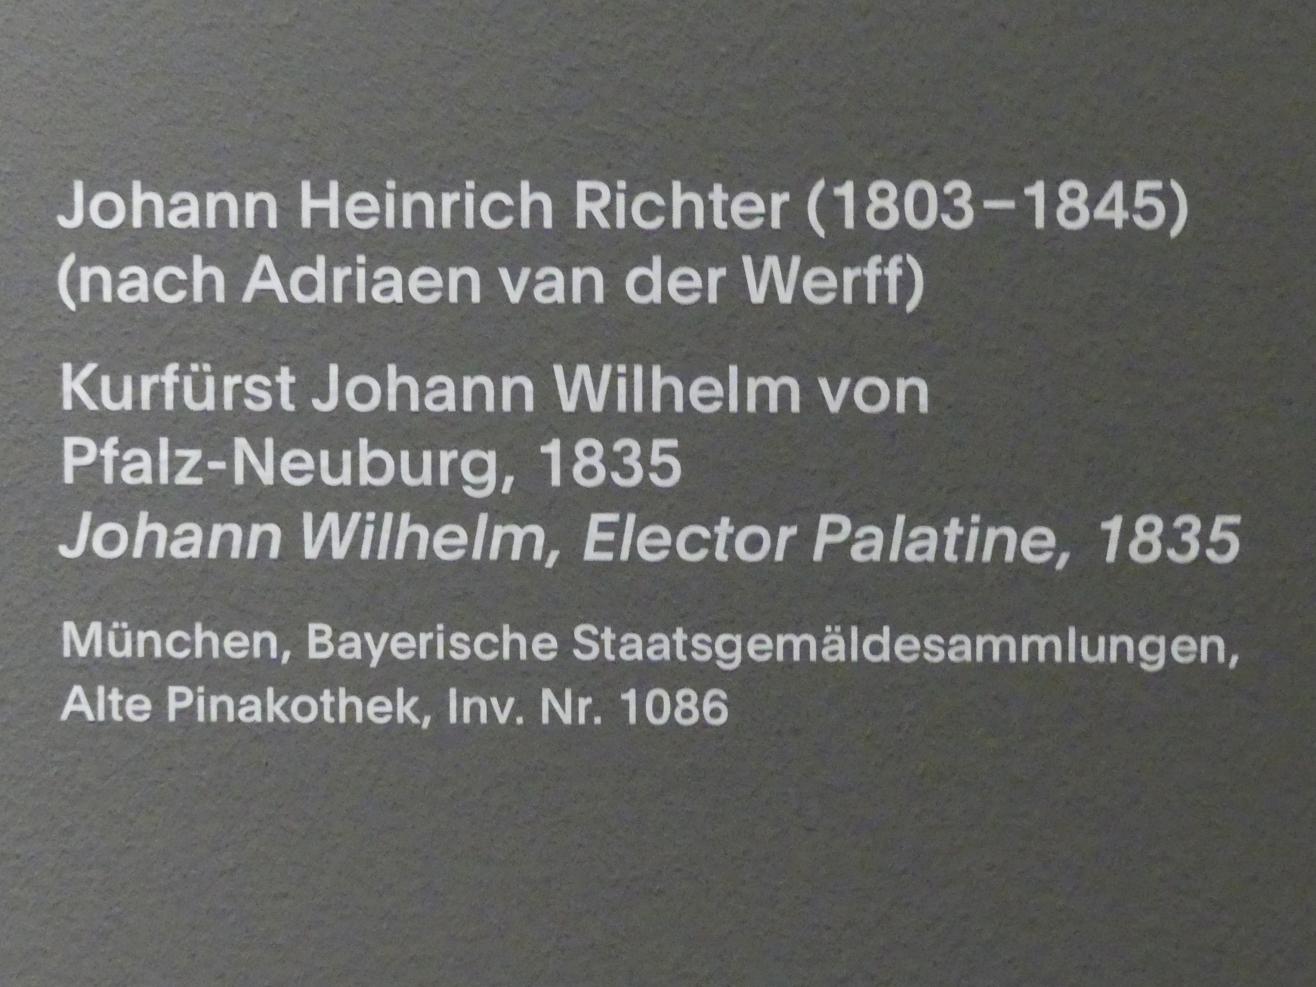 Johann Heinrich Richter (1835), Kurfürst Johann Wilhelm von Pfalz-Neuburg, München, Alte Pinakothek, Ausstellung "Van Dyck" vom 25.10.2019-02.02.2020, Eingang, 1835, Bild 2/2